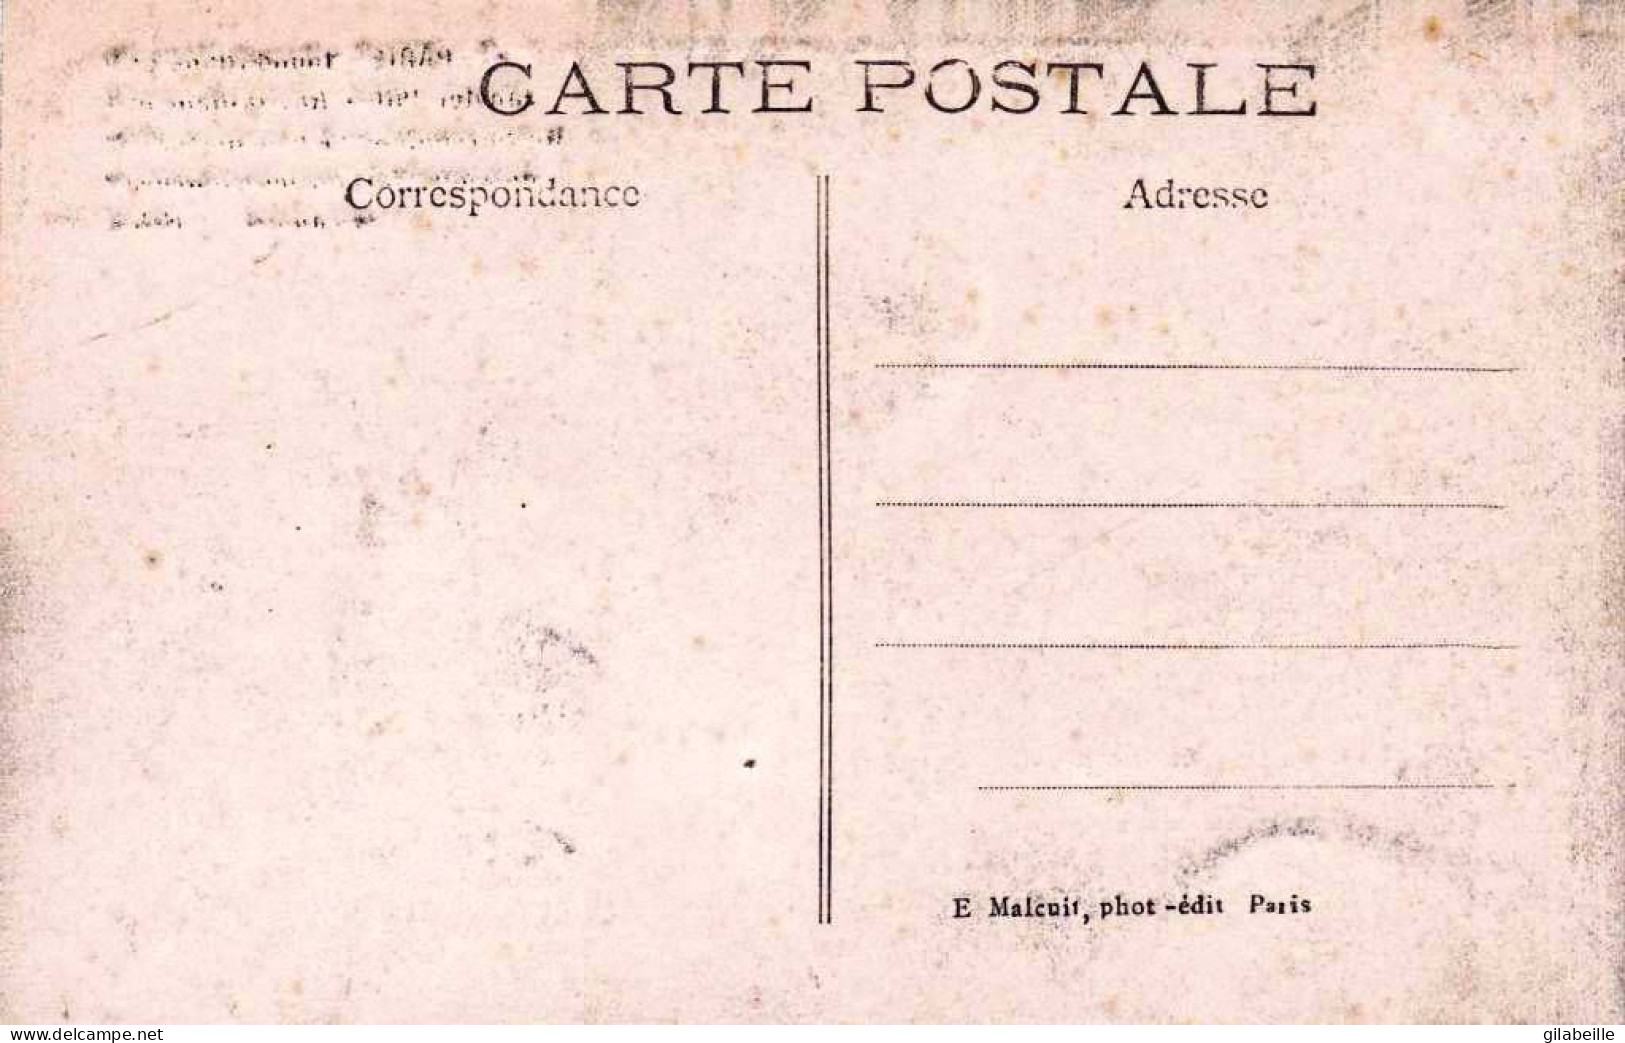 75 - PARIS 07 - Inondations De Janvier 1910 -  Ravitaillement Rue Surcouf -  Boucher Et  Boulanger Tournee En Canot - Arrondissement: 07